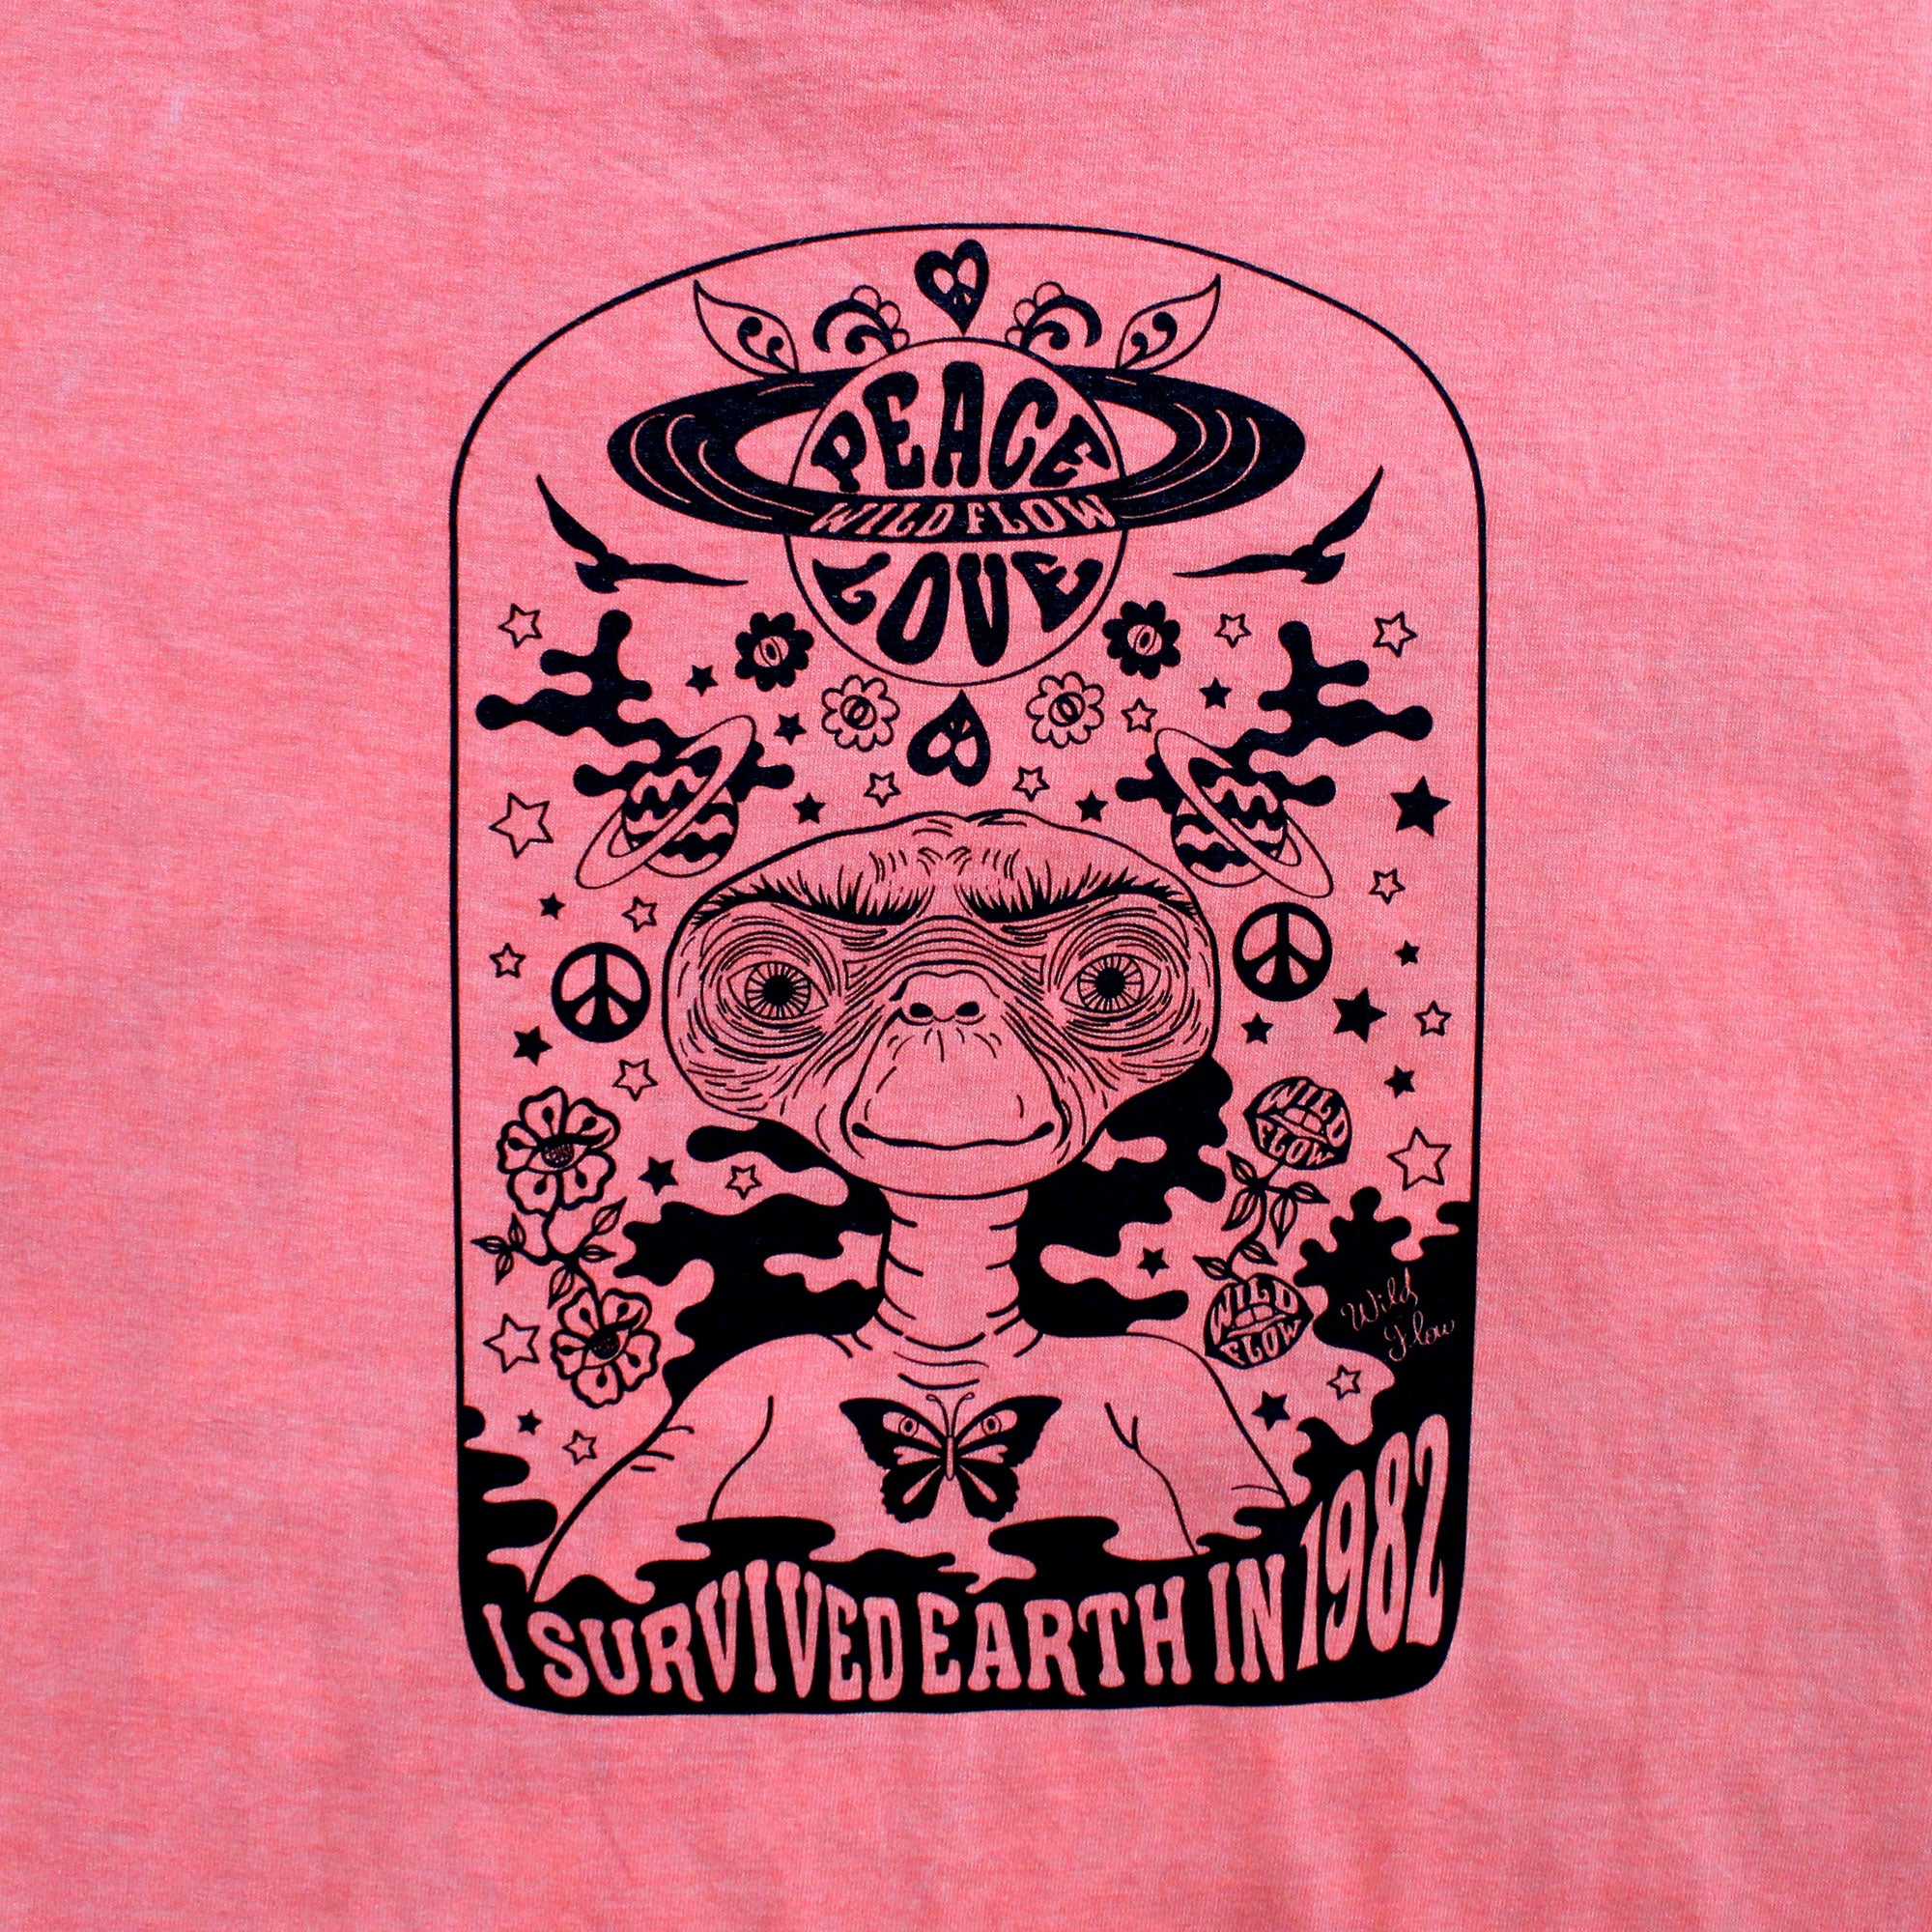 T-shirt rose flamingo E.T